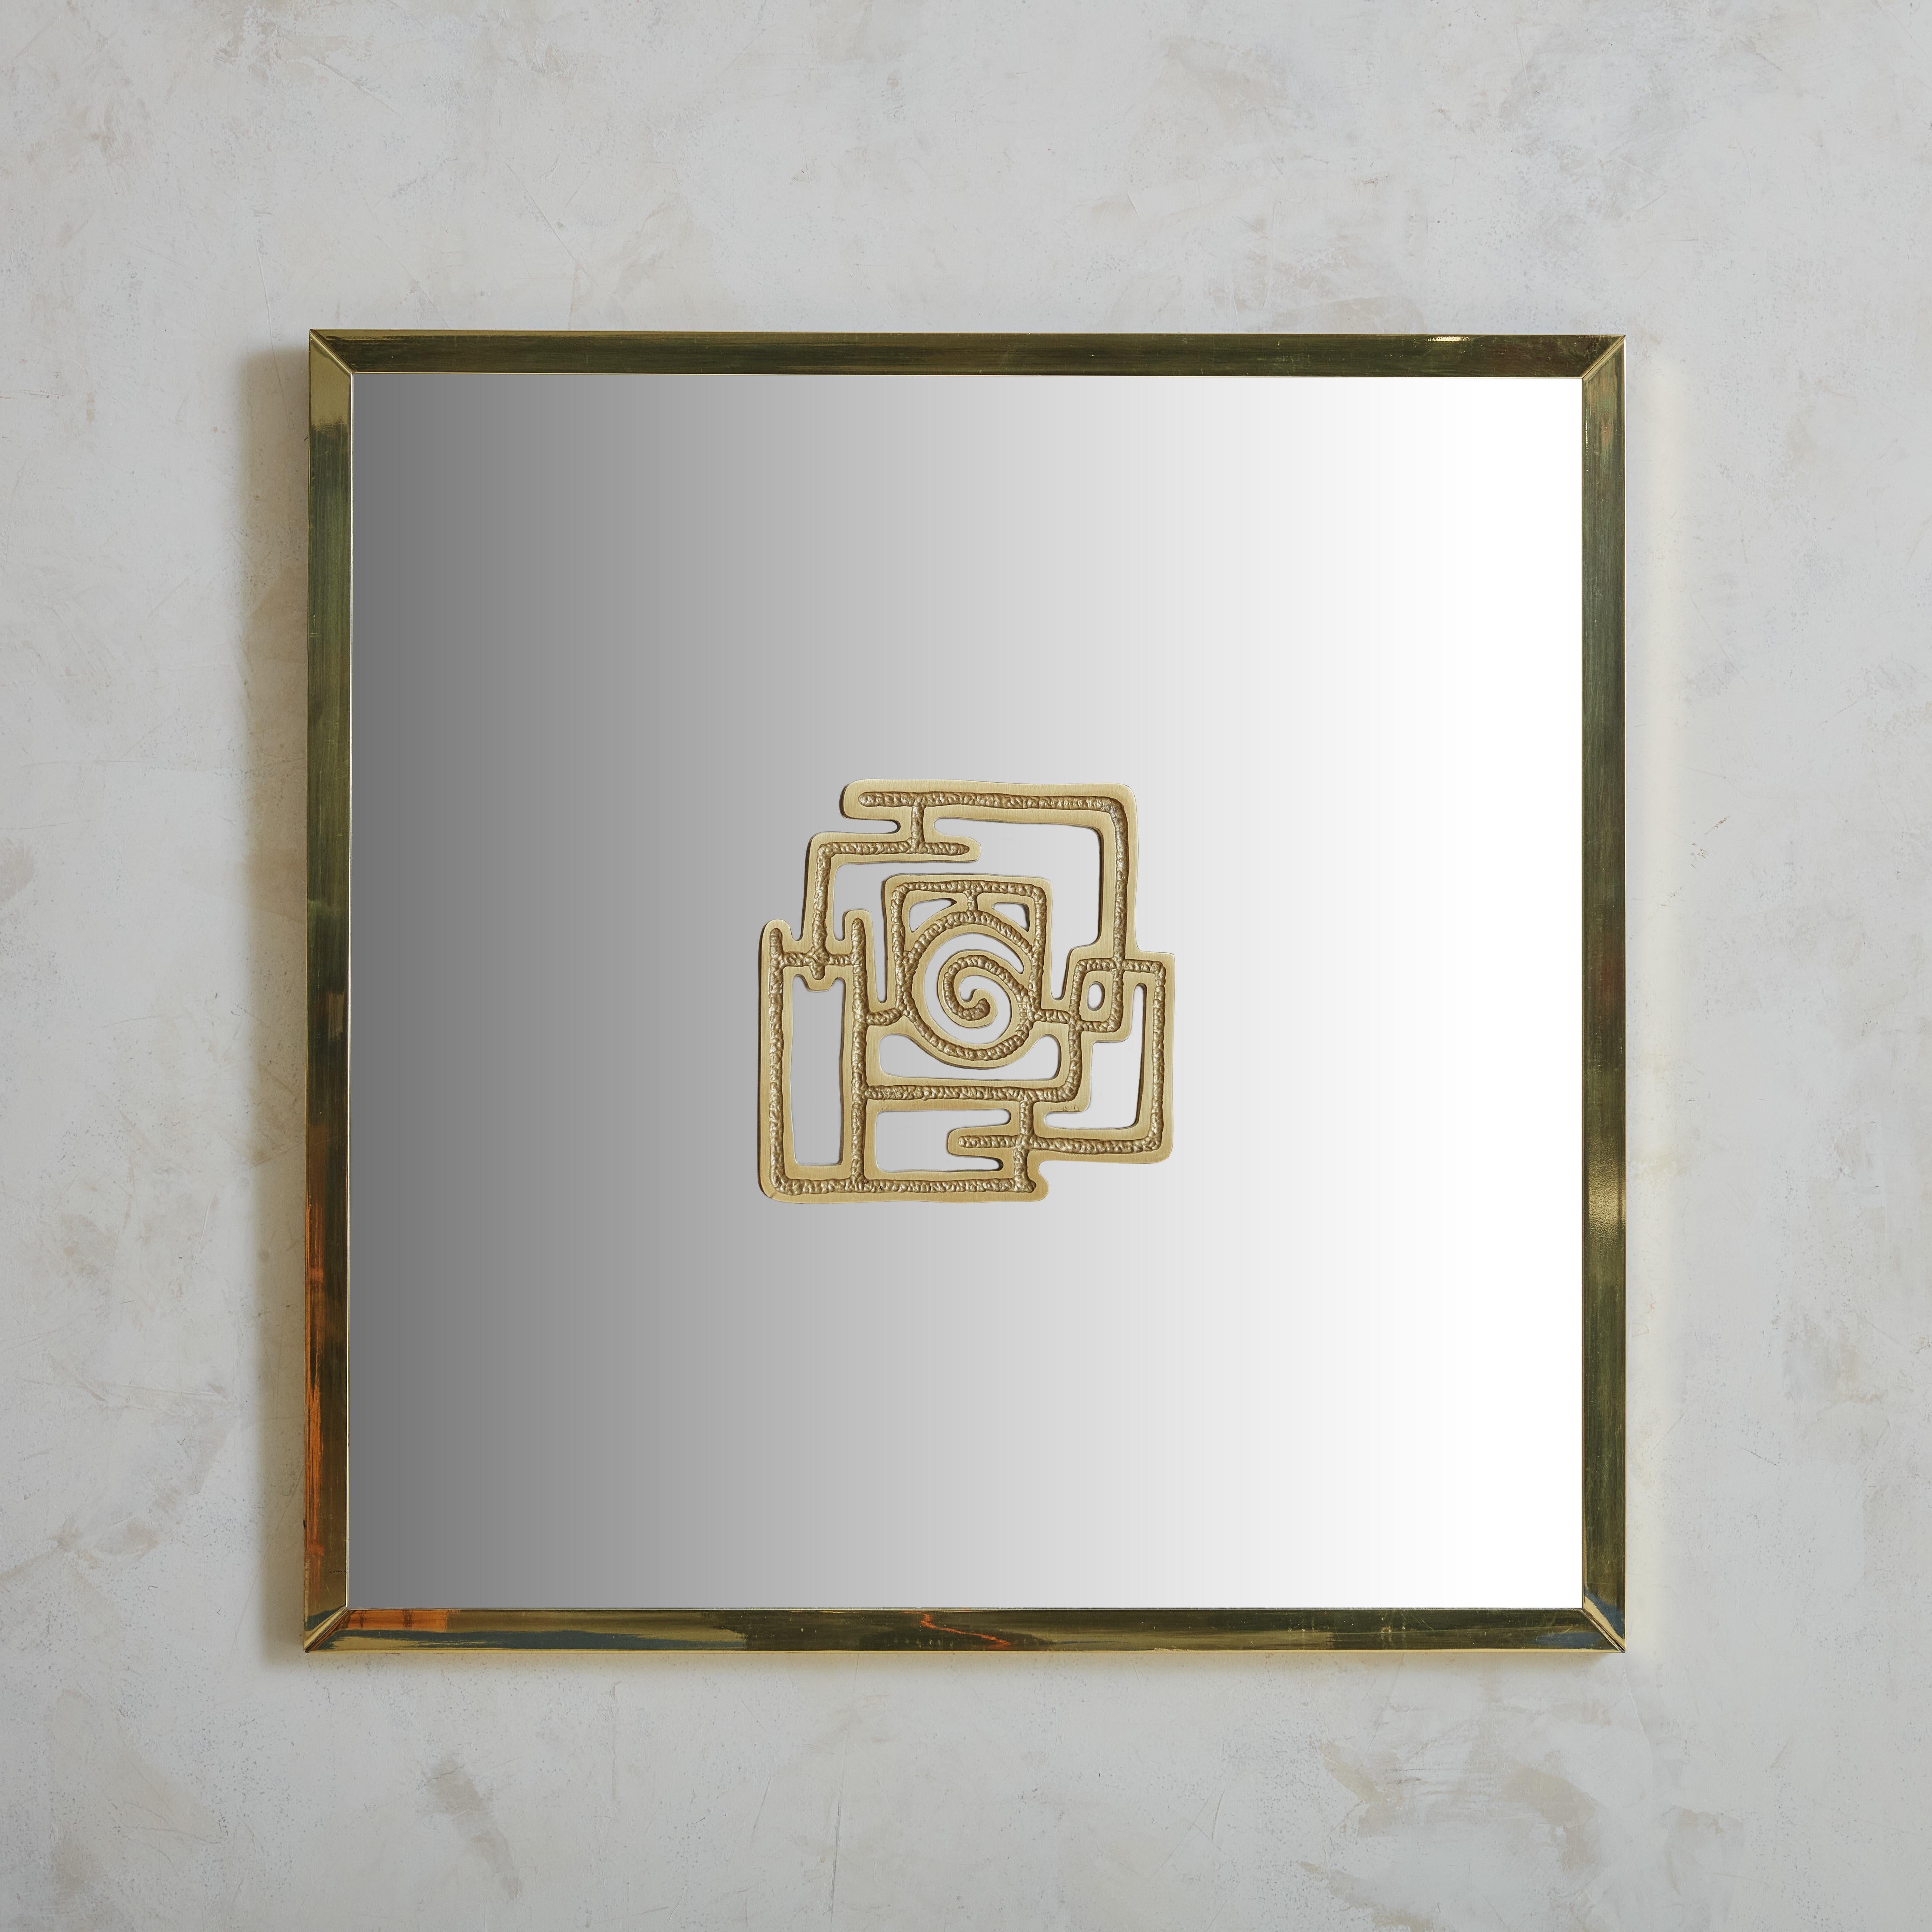 Schöner Spiegel mit Bronzerahmen und handgeschmiedetem Medaillon, Luciano Frigerio zugeschrieben. Dieses atemberaubende Stück zeigt ein perfektes Zusammenspiel zwischen industrieller Produktion im Rahmen und italienischer Handwerkskunst in der